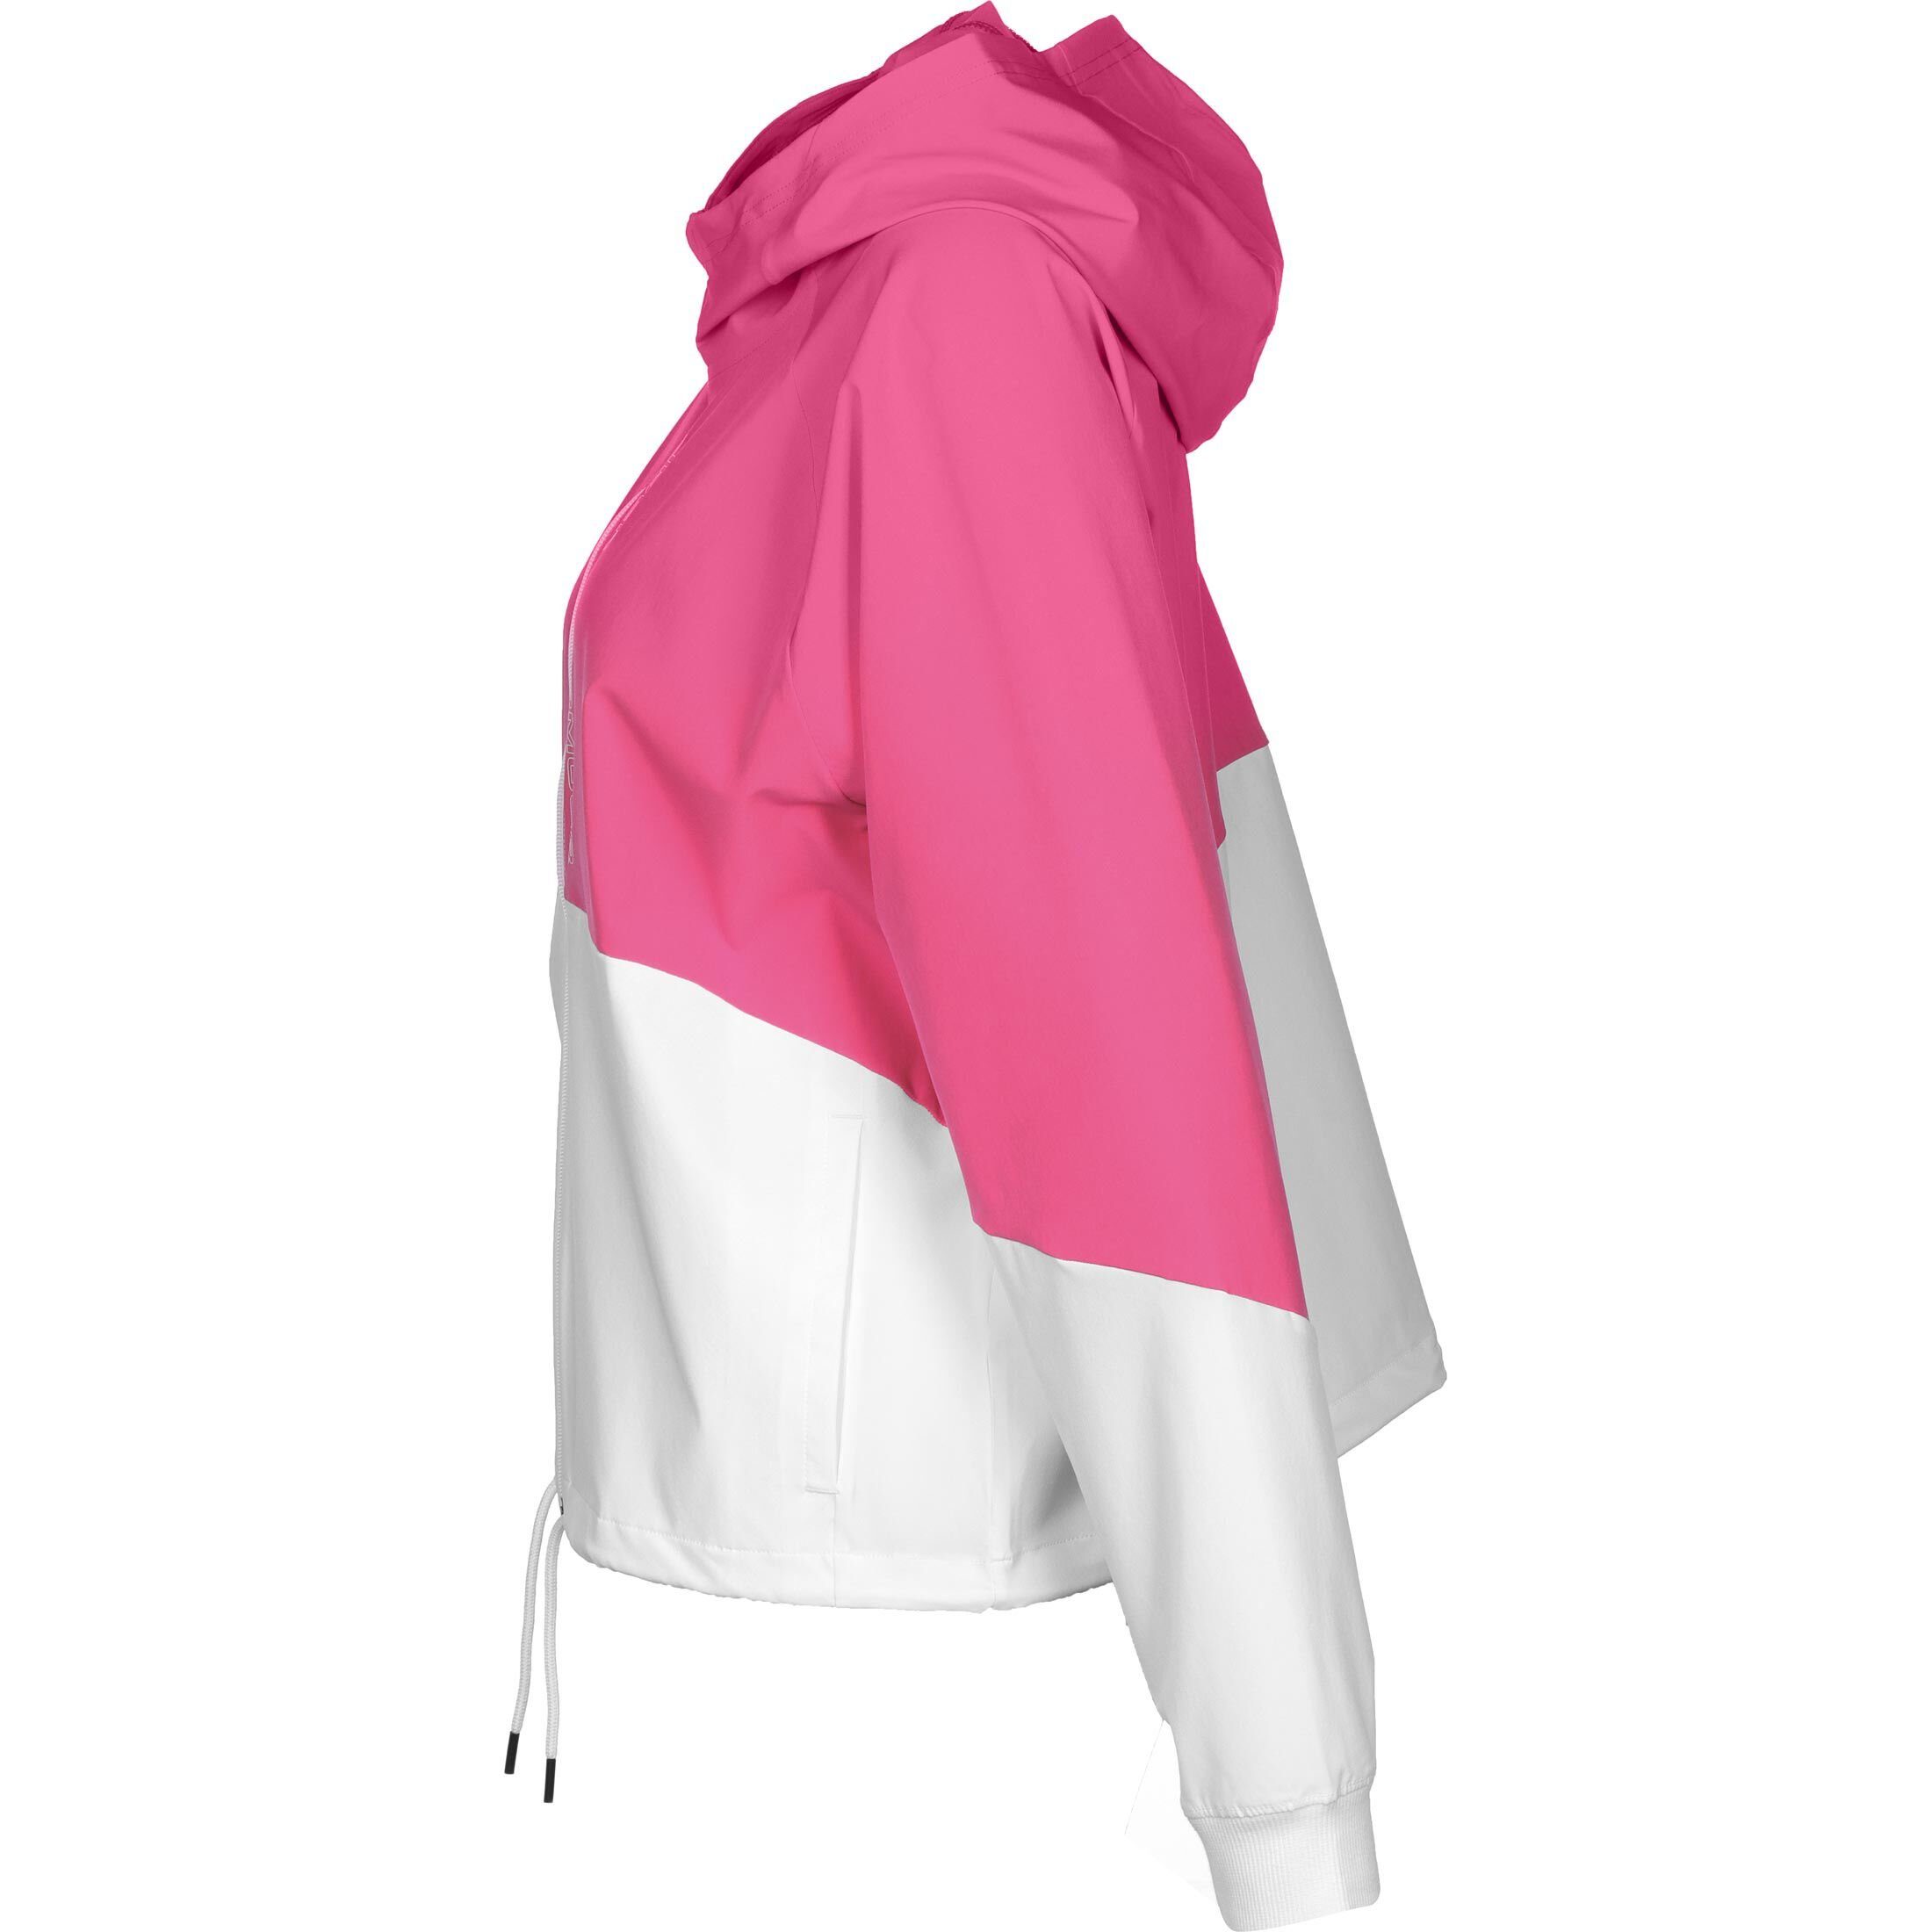 Under Armour® Trainingsjacke Damen Woven Jacke / weiß pink